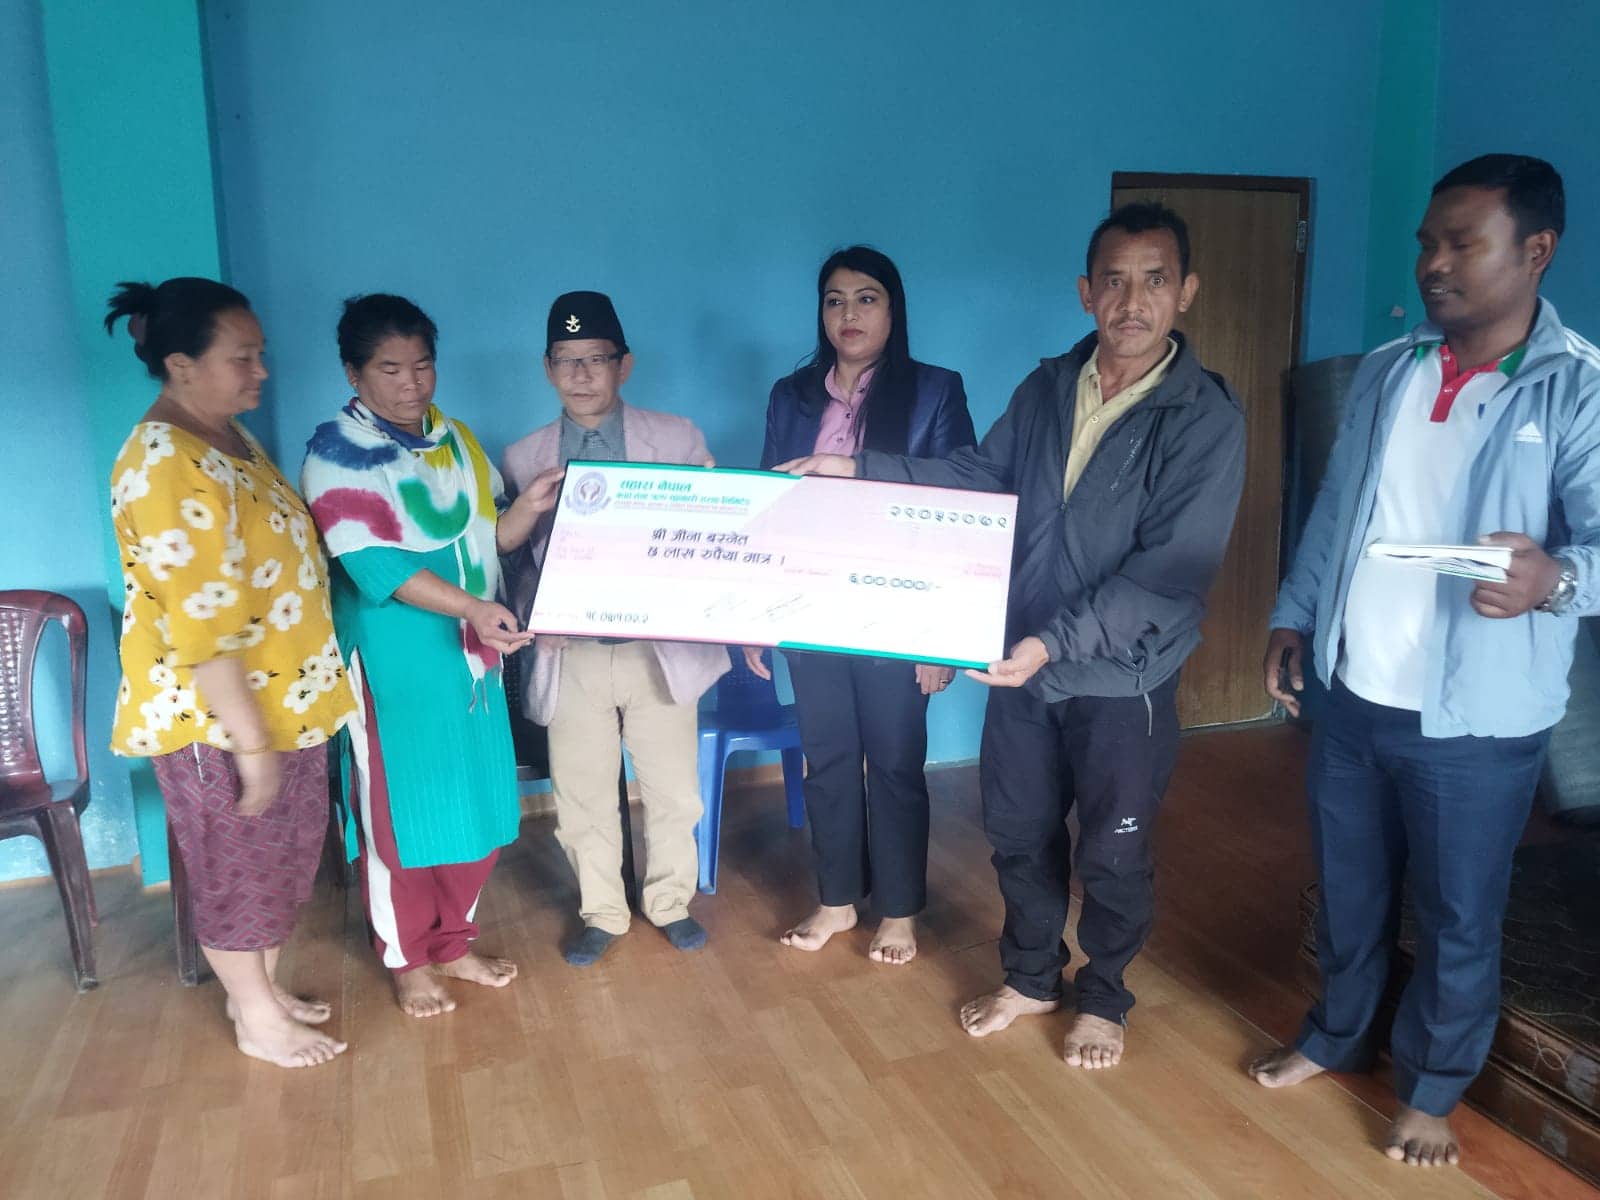 सहारा नेपाल द्वारा मृतकका परिवारलाई बिमा बापतको ६ लाख रुपैयाँ हस्तान्तरण